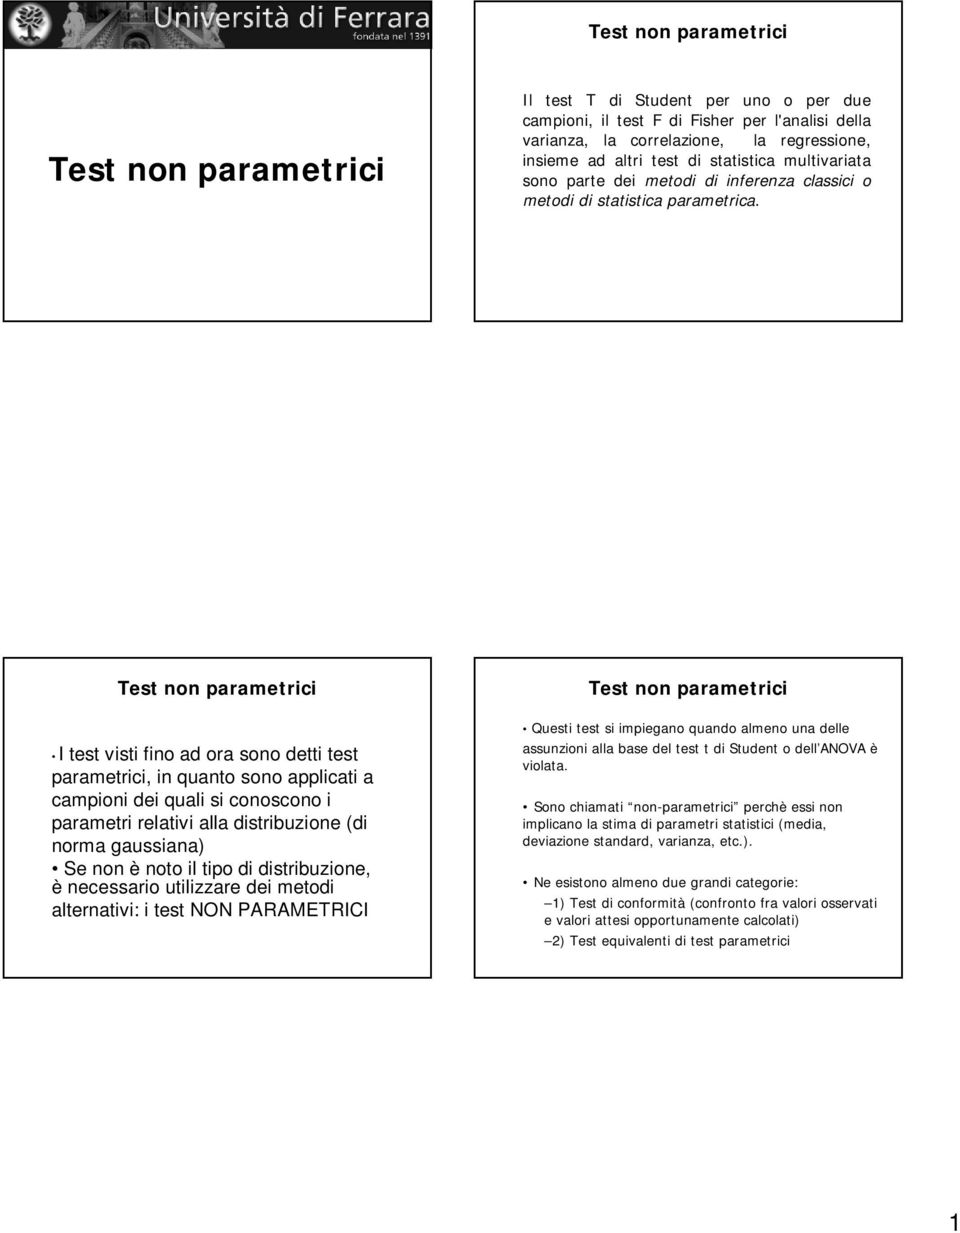 Test non parametrici I test visti fino ad ora sono detti test parametrici, in quanto sono applicati a campioni dei quali si conoscono i parametri relativi alla distribuzione (di norma gaussiana) Se